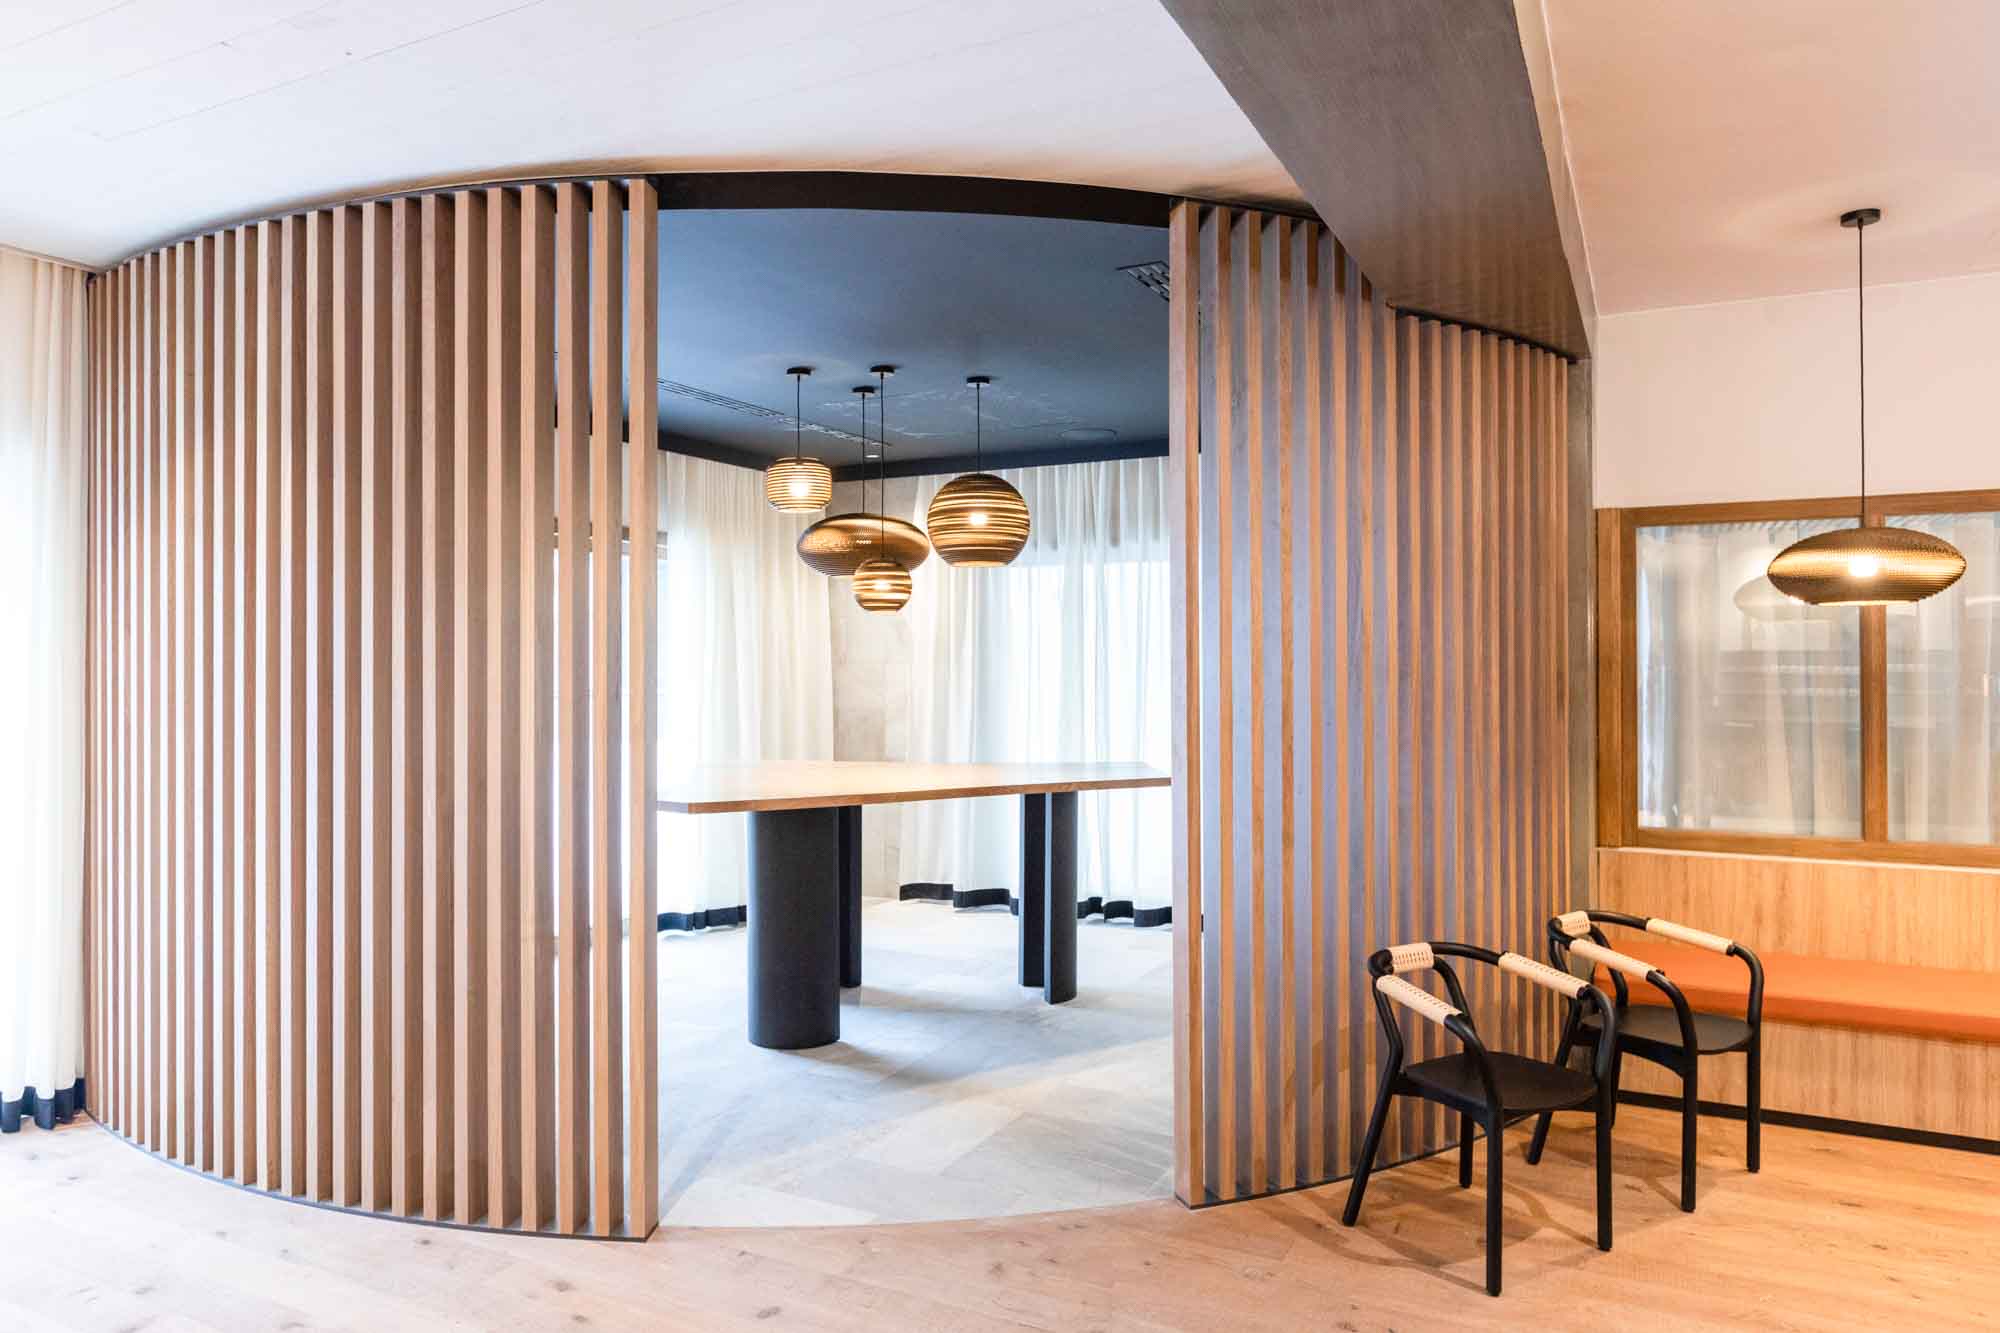 Projet d'aménagement de l'hôtel Novotel Megève, création de tables et d'agencements sur-mesure par FOR ME LAB